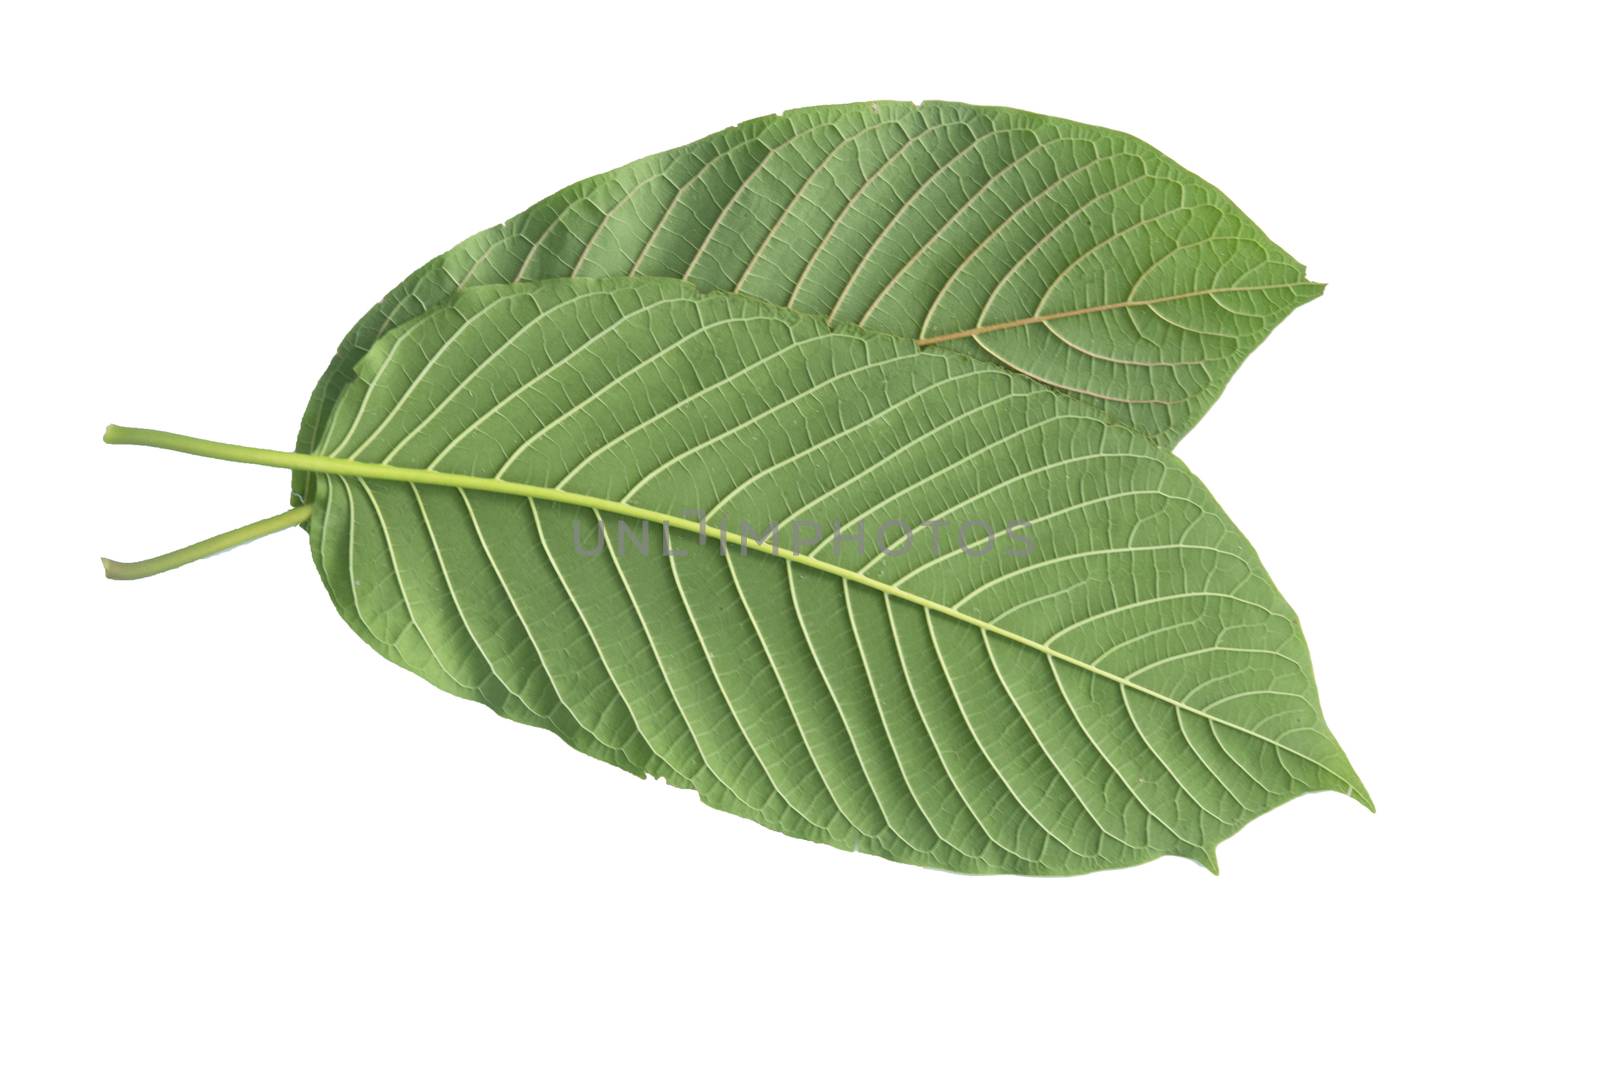 Kratom Leaf (Mitragyna Speciosa) by Aedka_Stodio